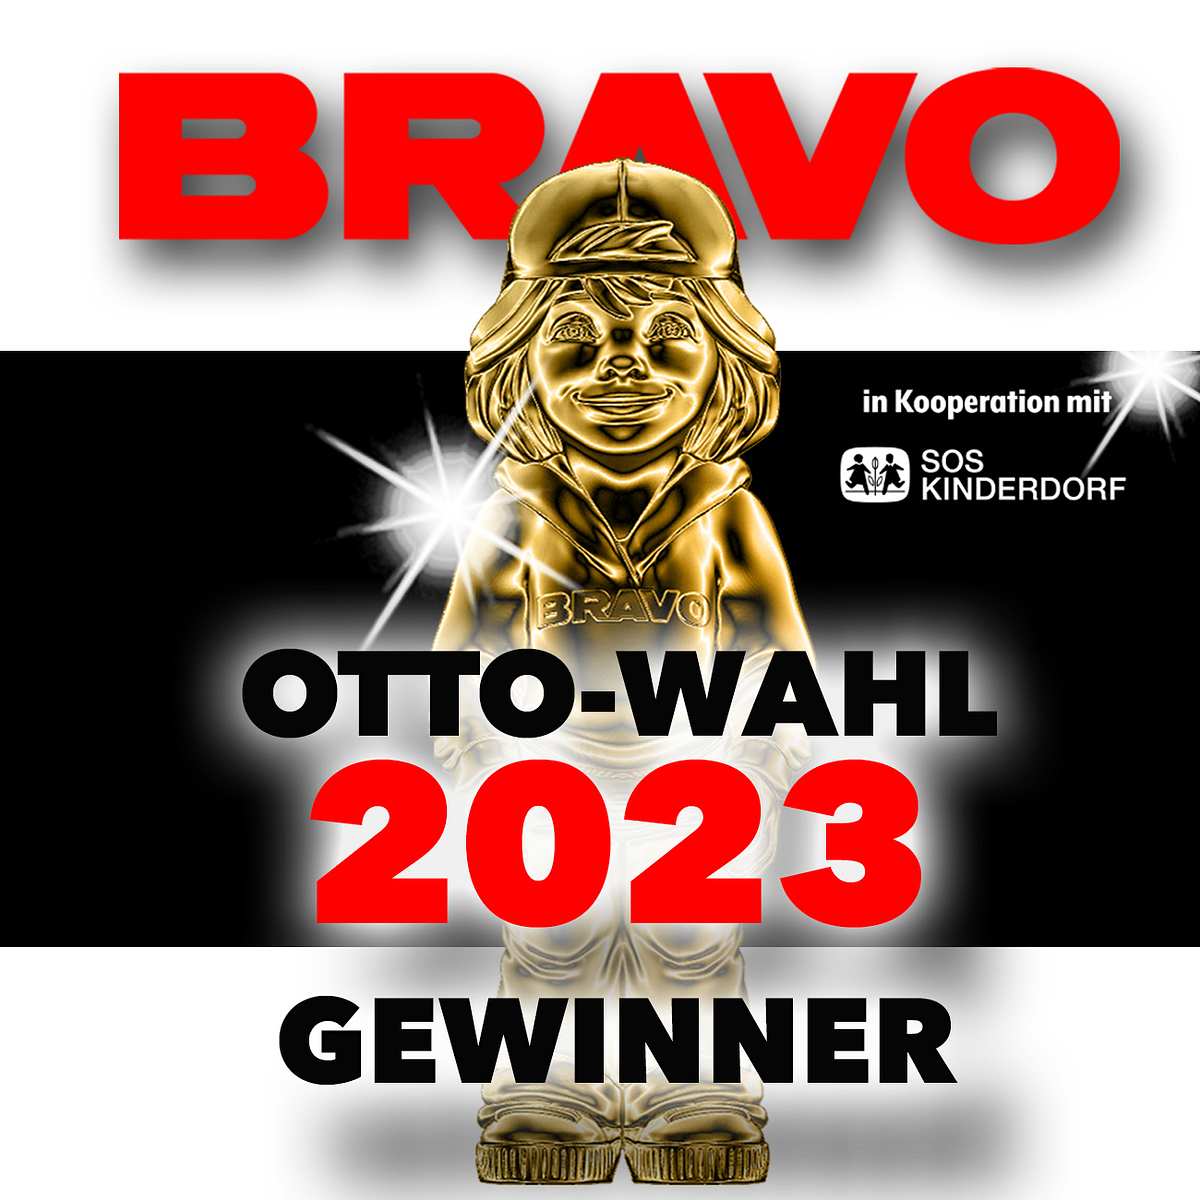 BRAVO OTTO wahl 2023 gewinner